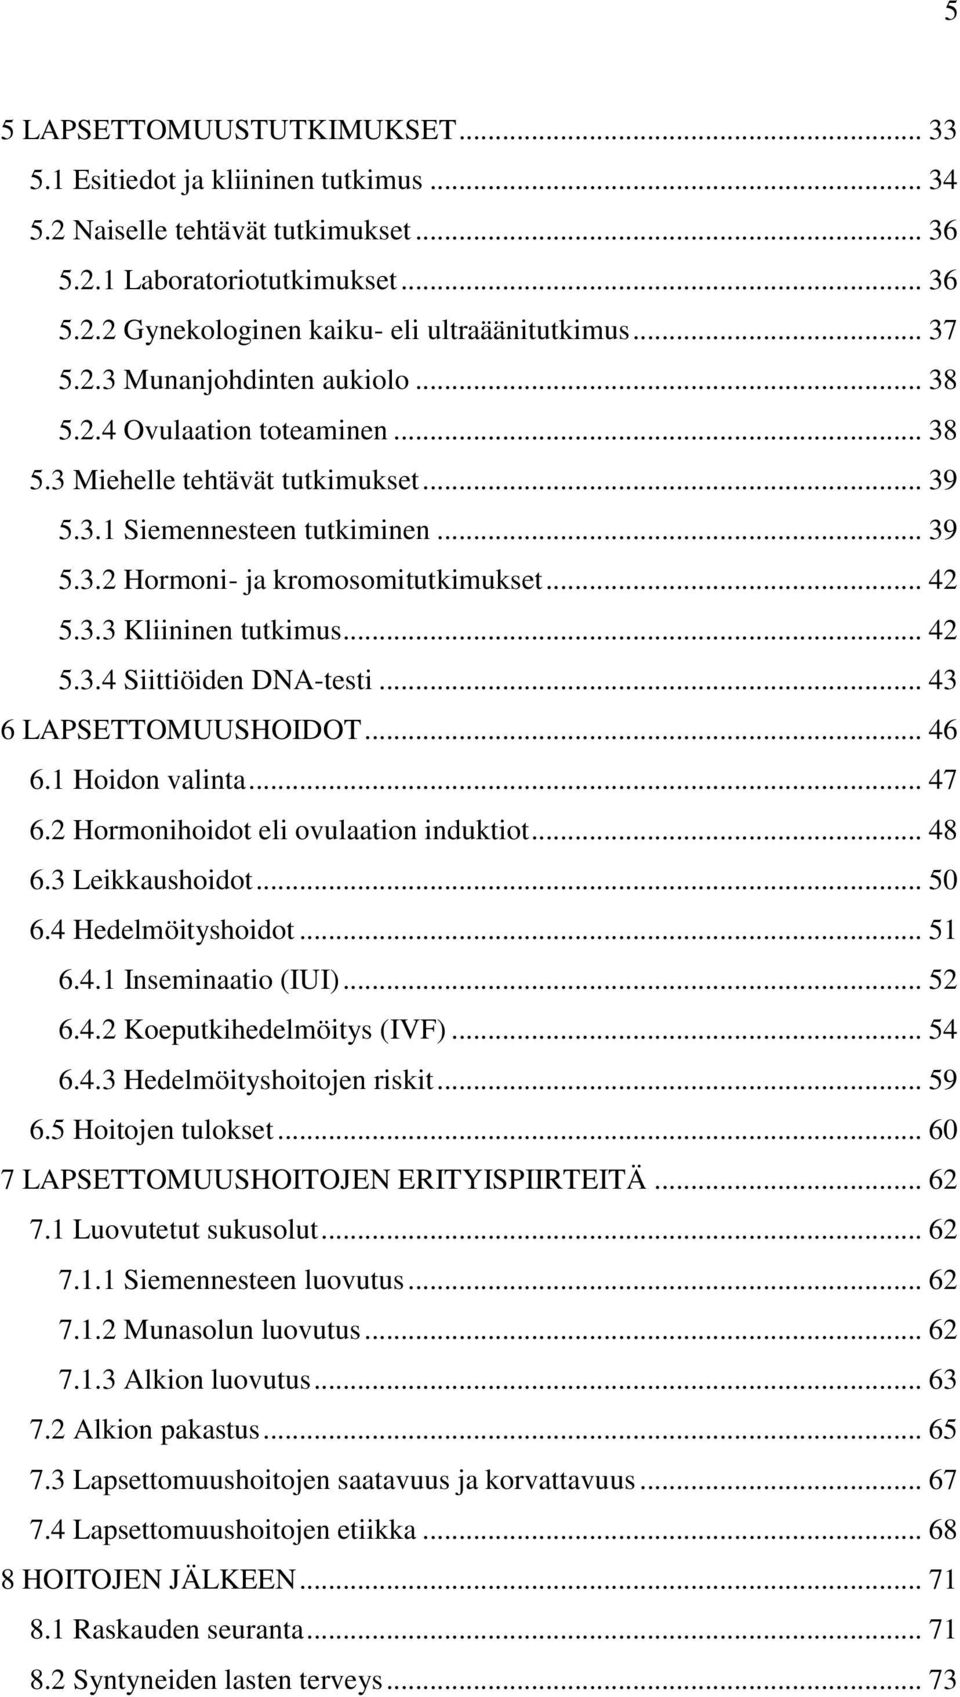 3.3 Kliininen tutkimus... 42 5.3.4 Siittiöiden DNA-testi... 43 6 LAPSETTOMUUSHOIDOT... 46 6.1 Hoidon valinta... 47 6.2 Hormonihoidot eli ovulaation induktiot... 48 6.3 Leikkaushoidot... 50 6.